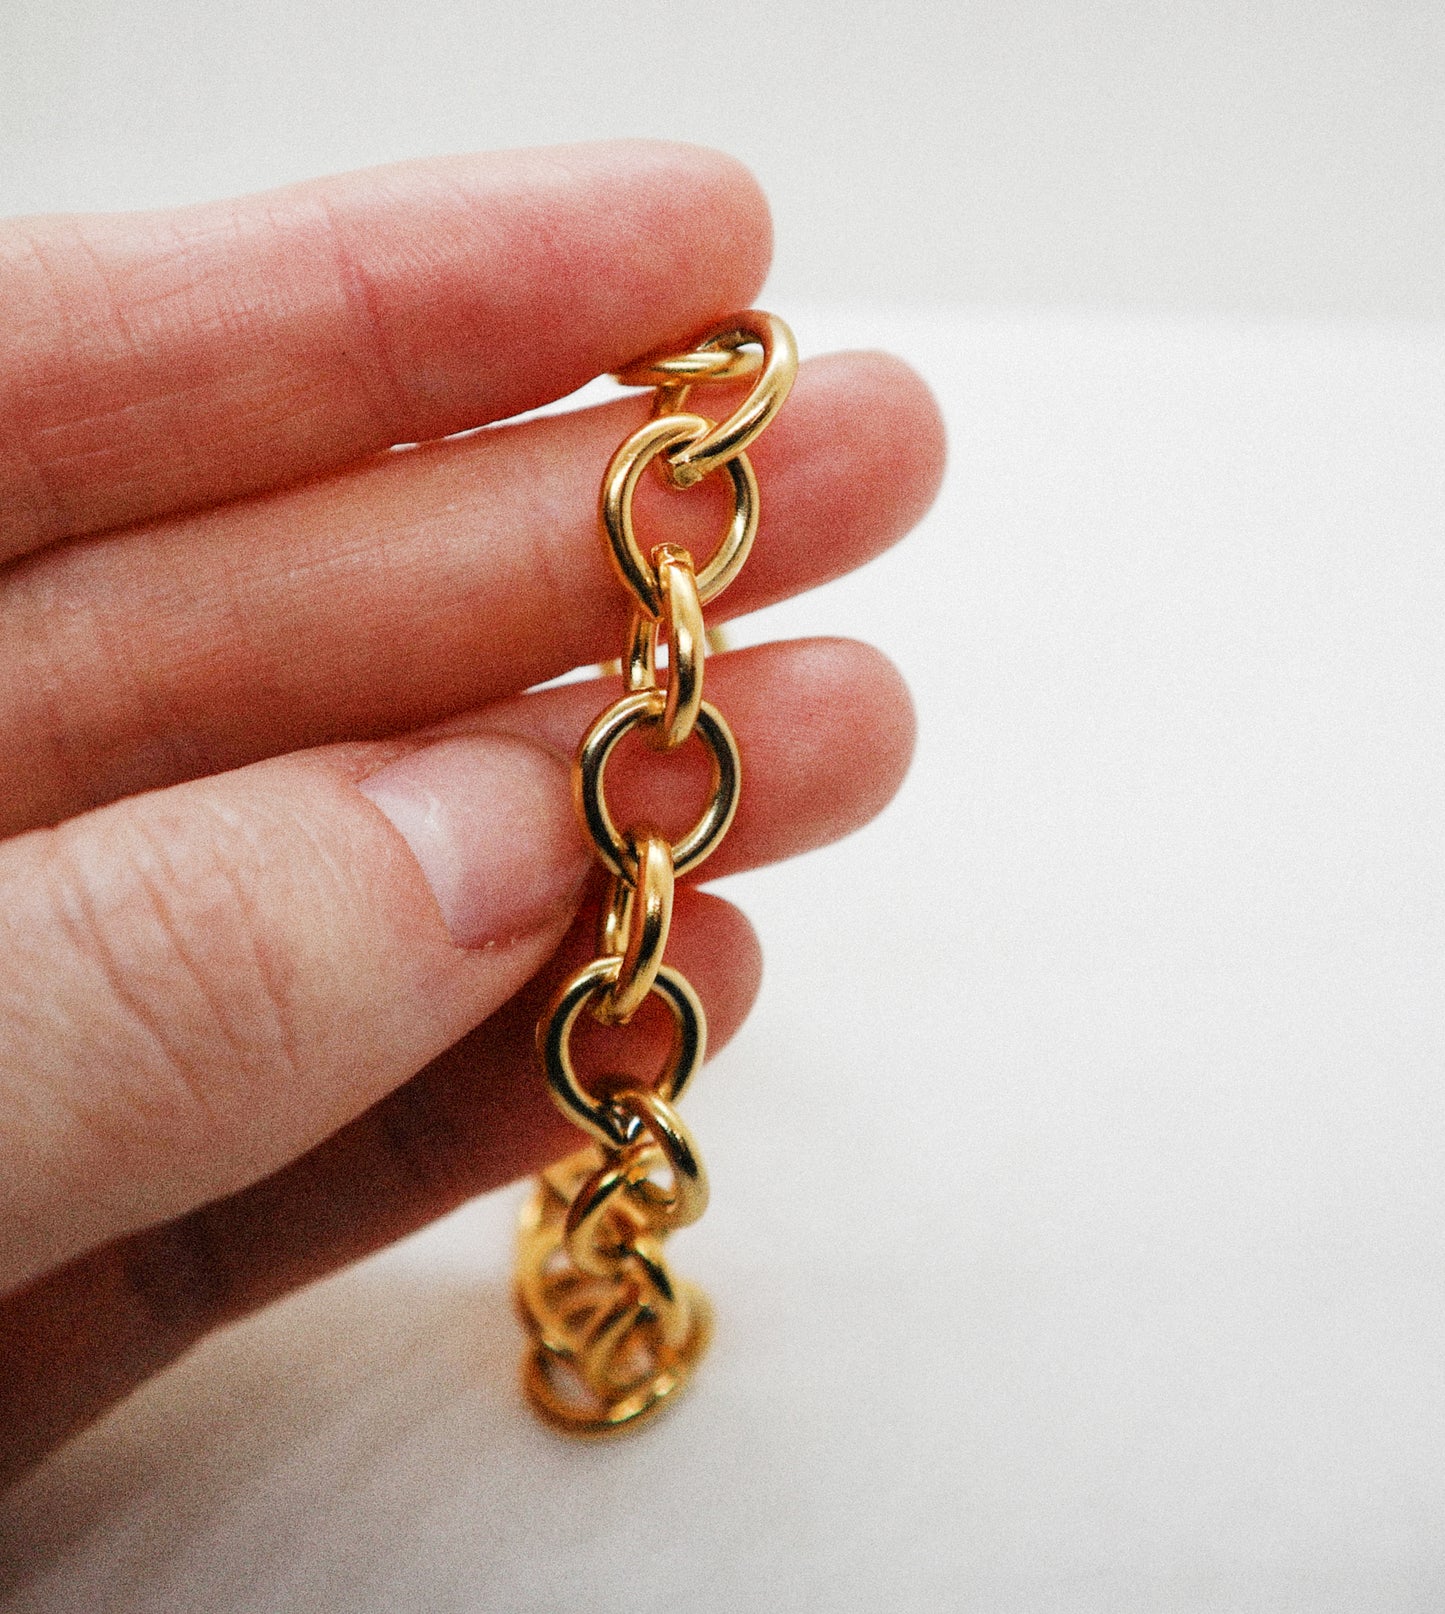 Brandy gold bracelet